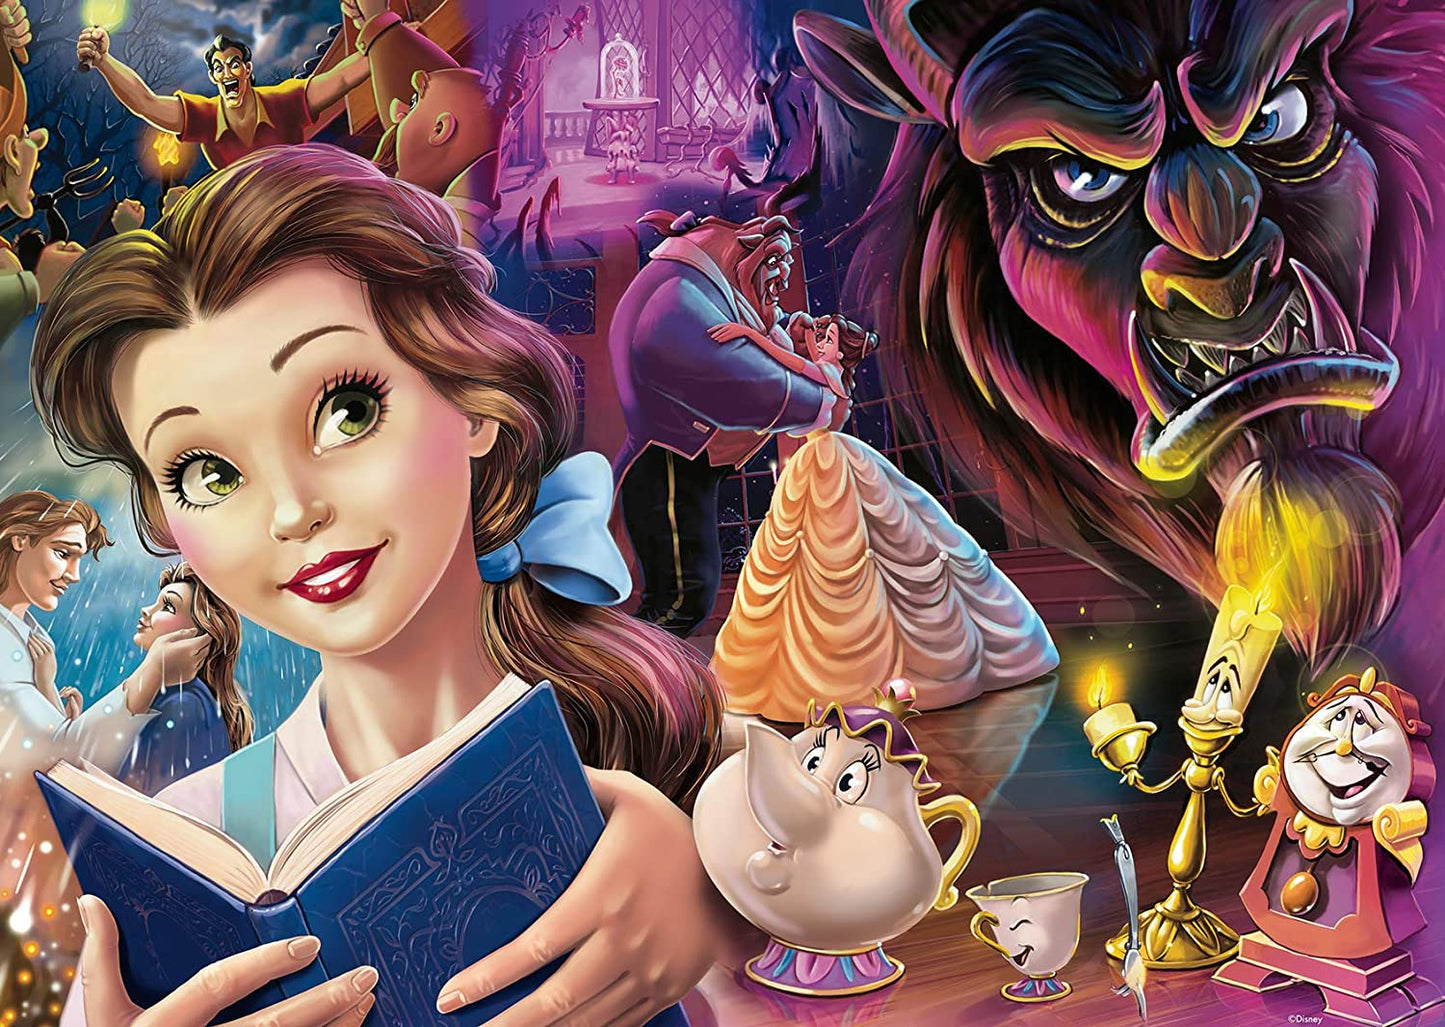 Collector's edition Belle van Disney, puzzel van 1000 stukjes